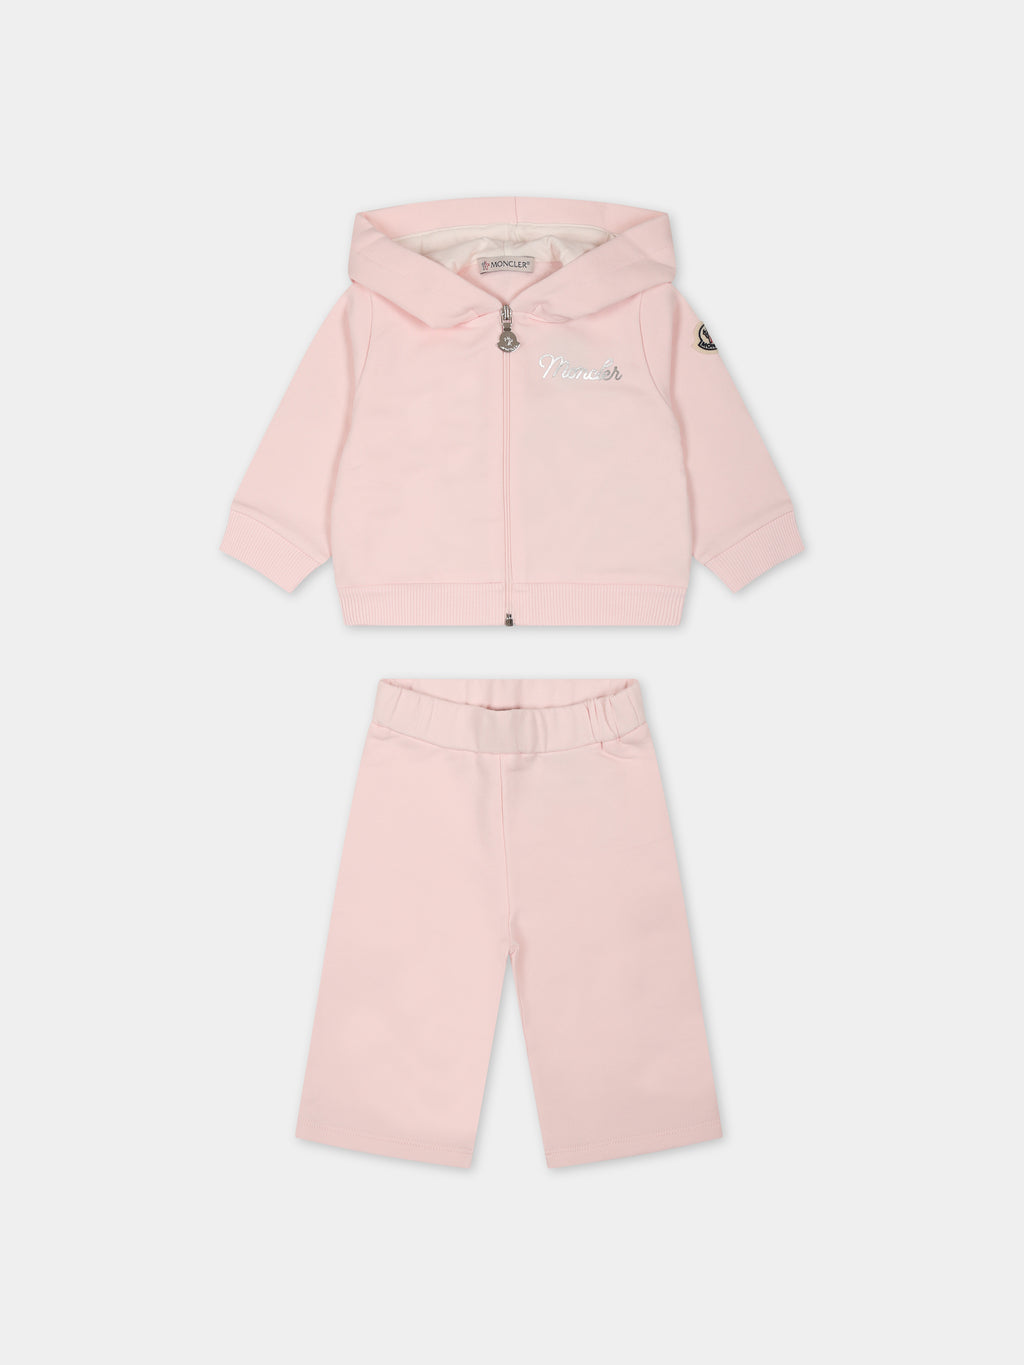 Completo rosa per neonata con logo